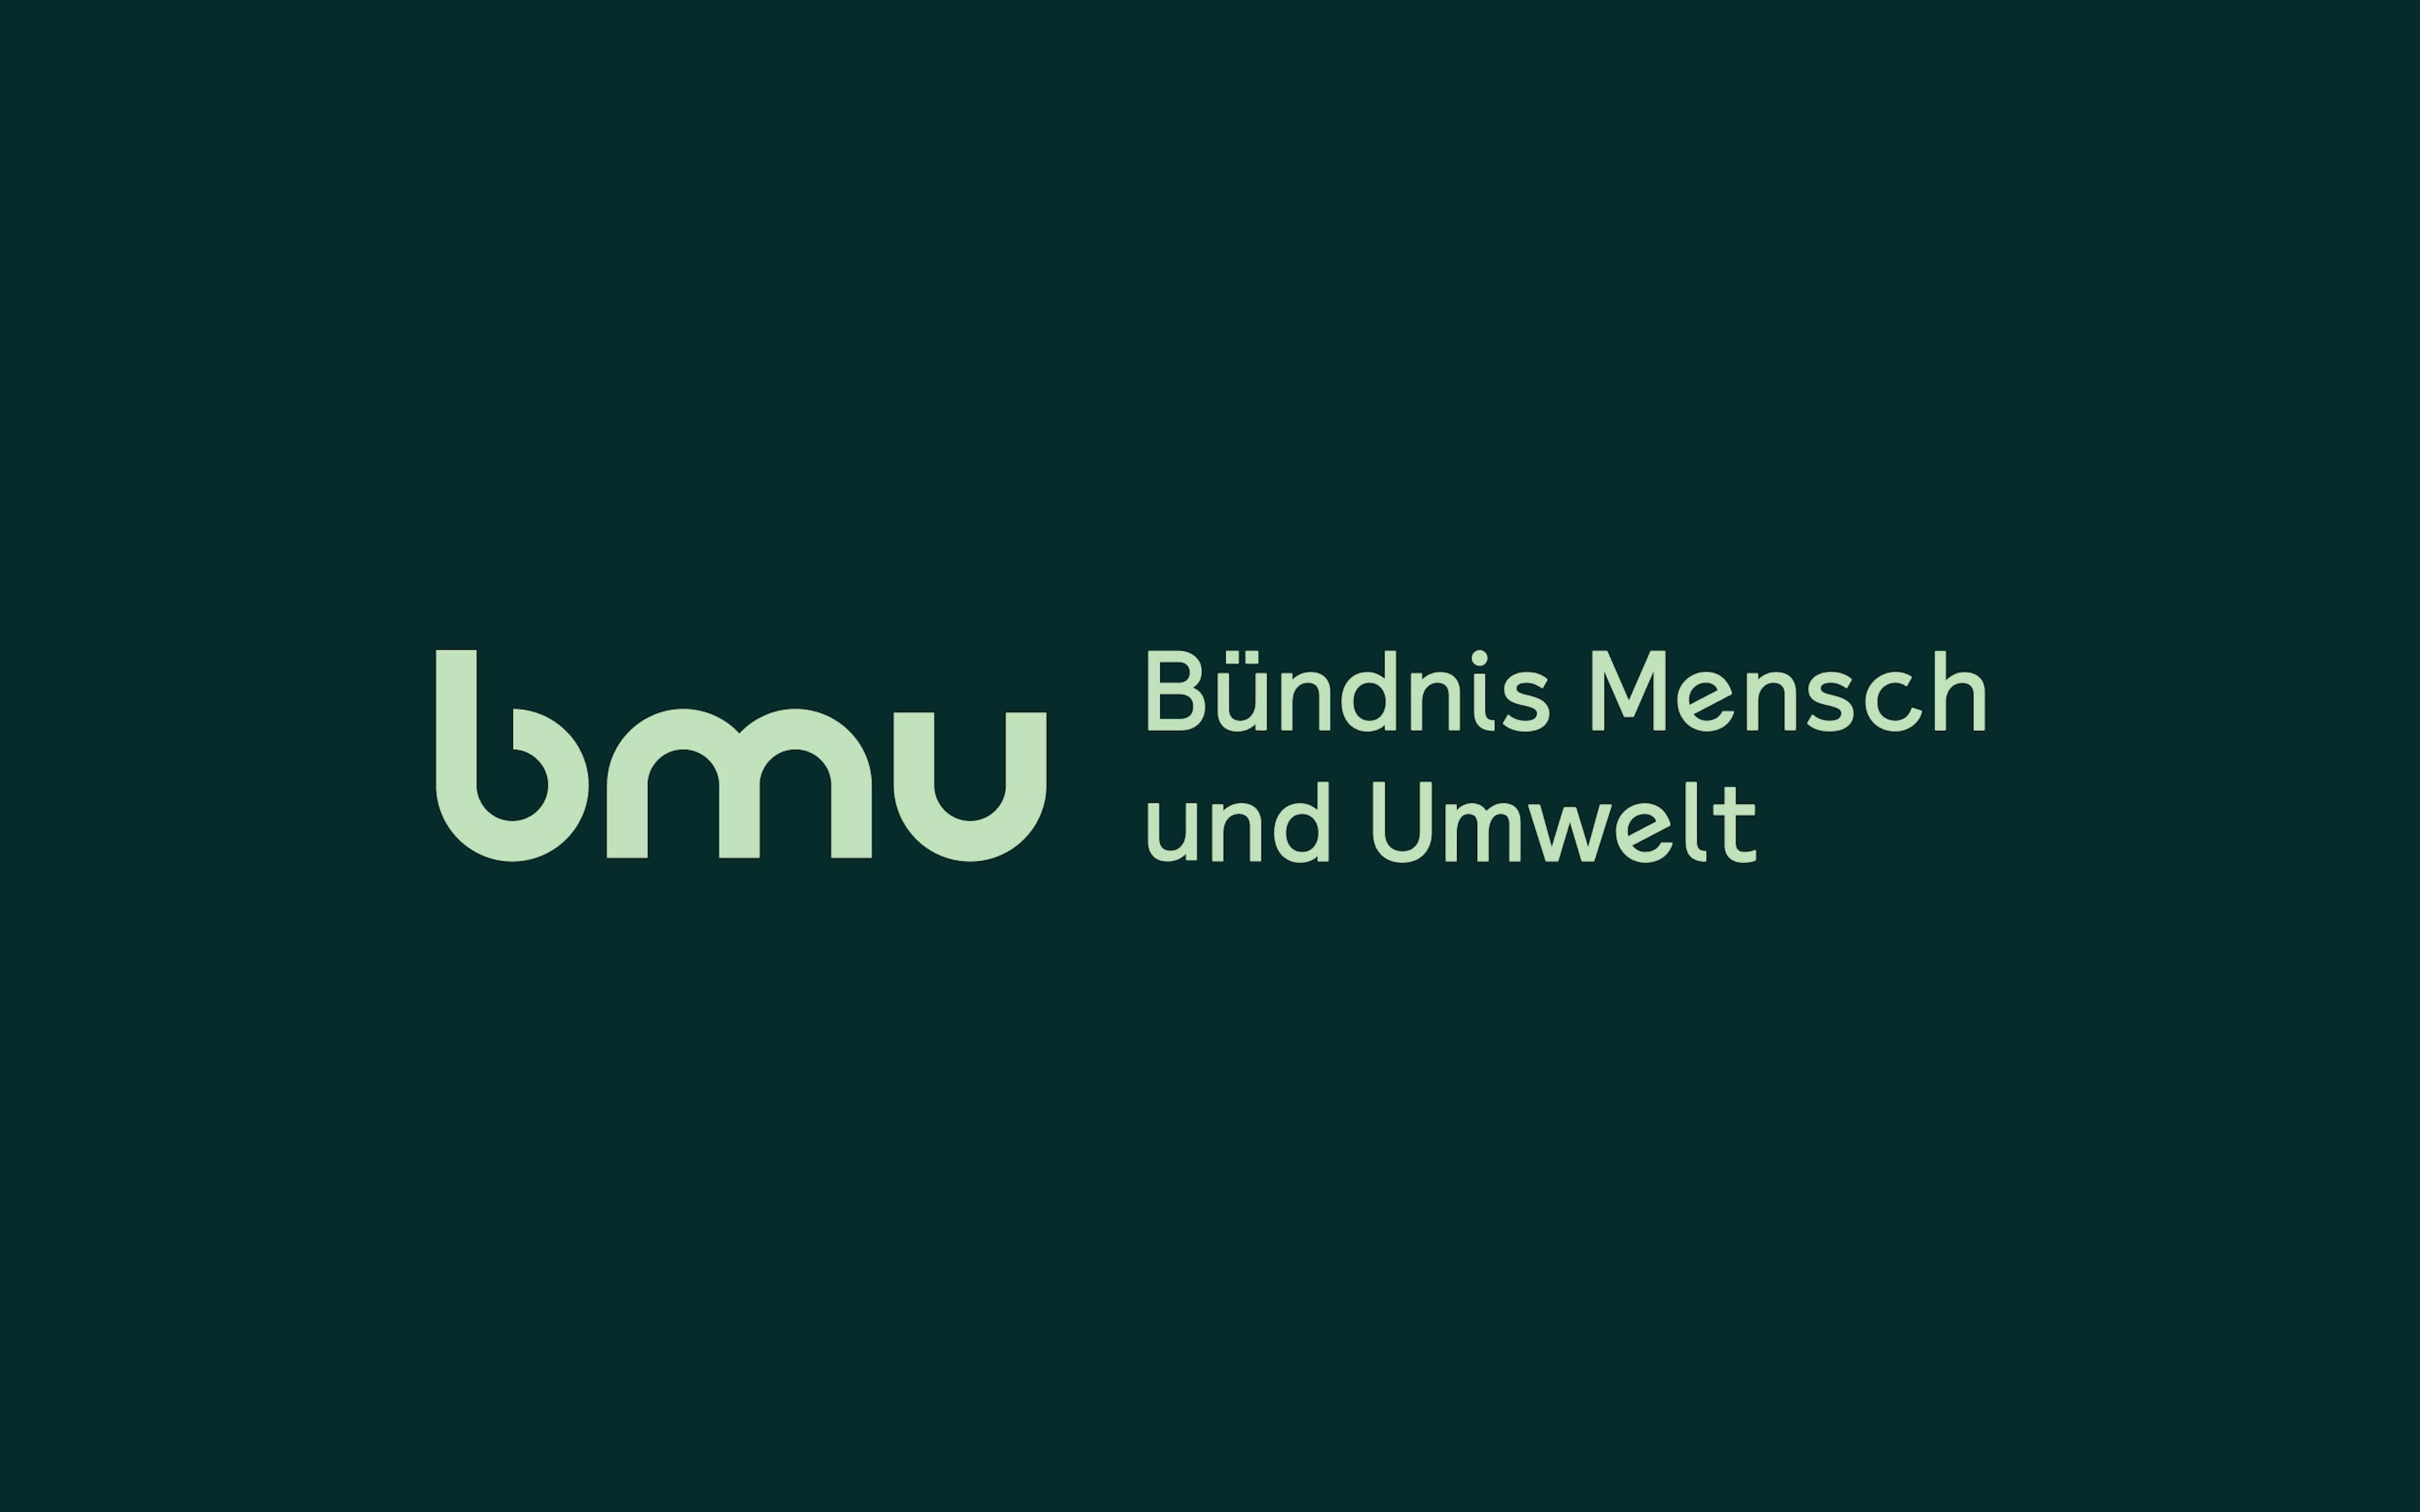 Grafik zeigt das mint-grüne Logo "bmu Bündnis Mensch und Umwelt" auf dunkelgrünem Hintergrund